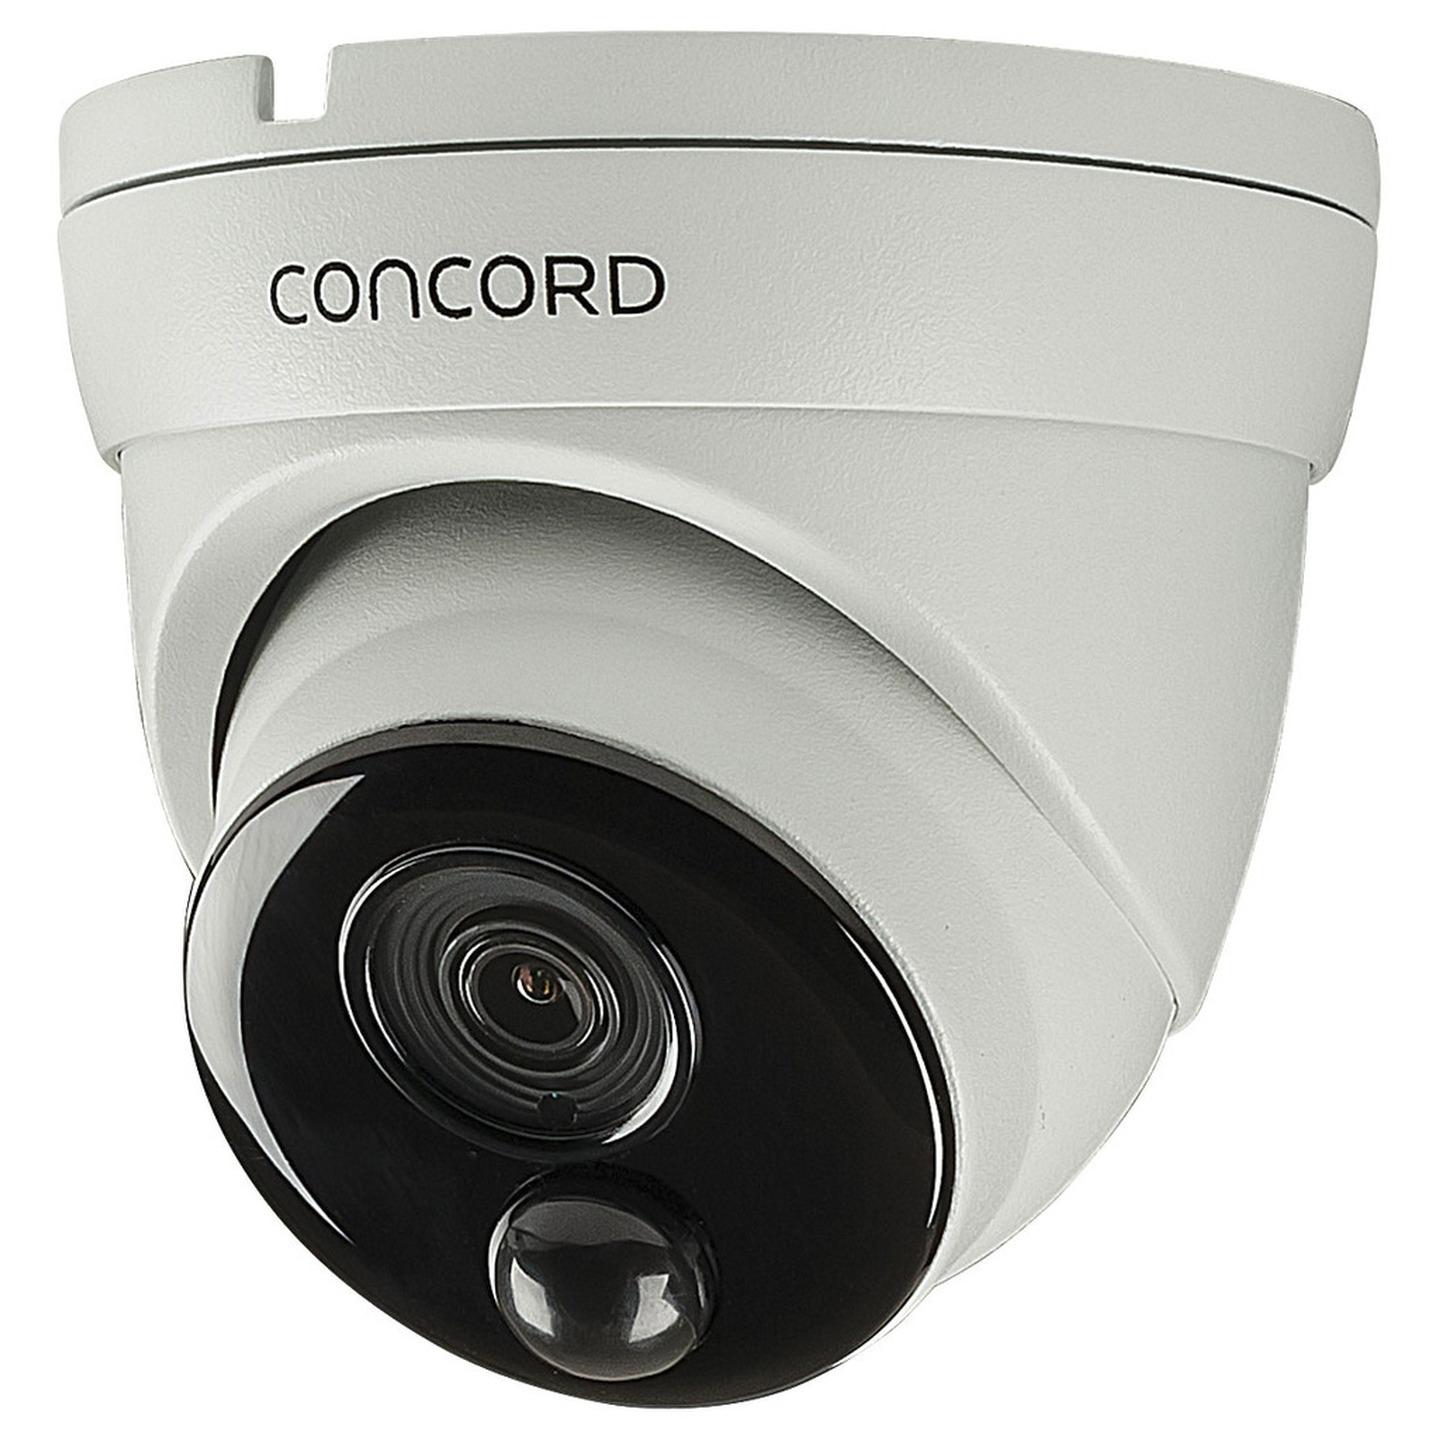 Concord 5MP PIR Dome IP Camera